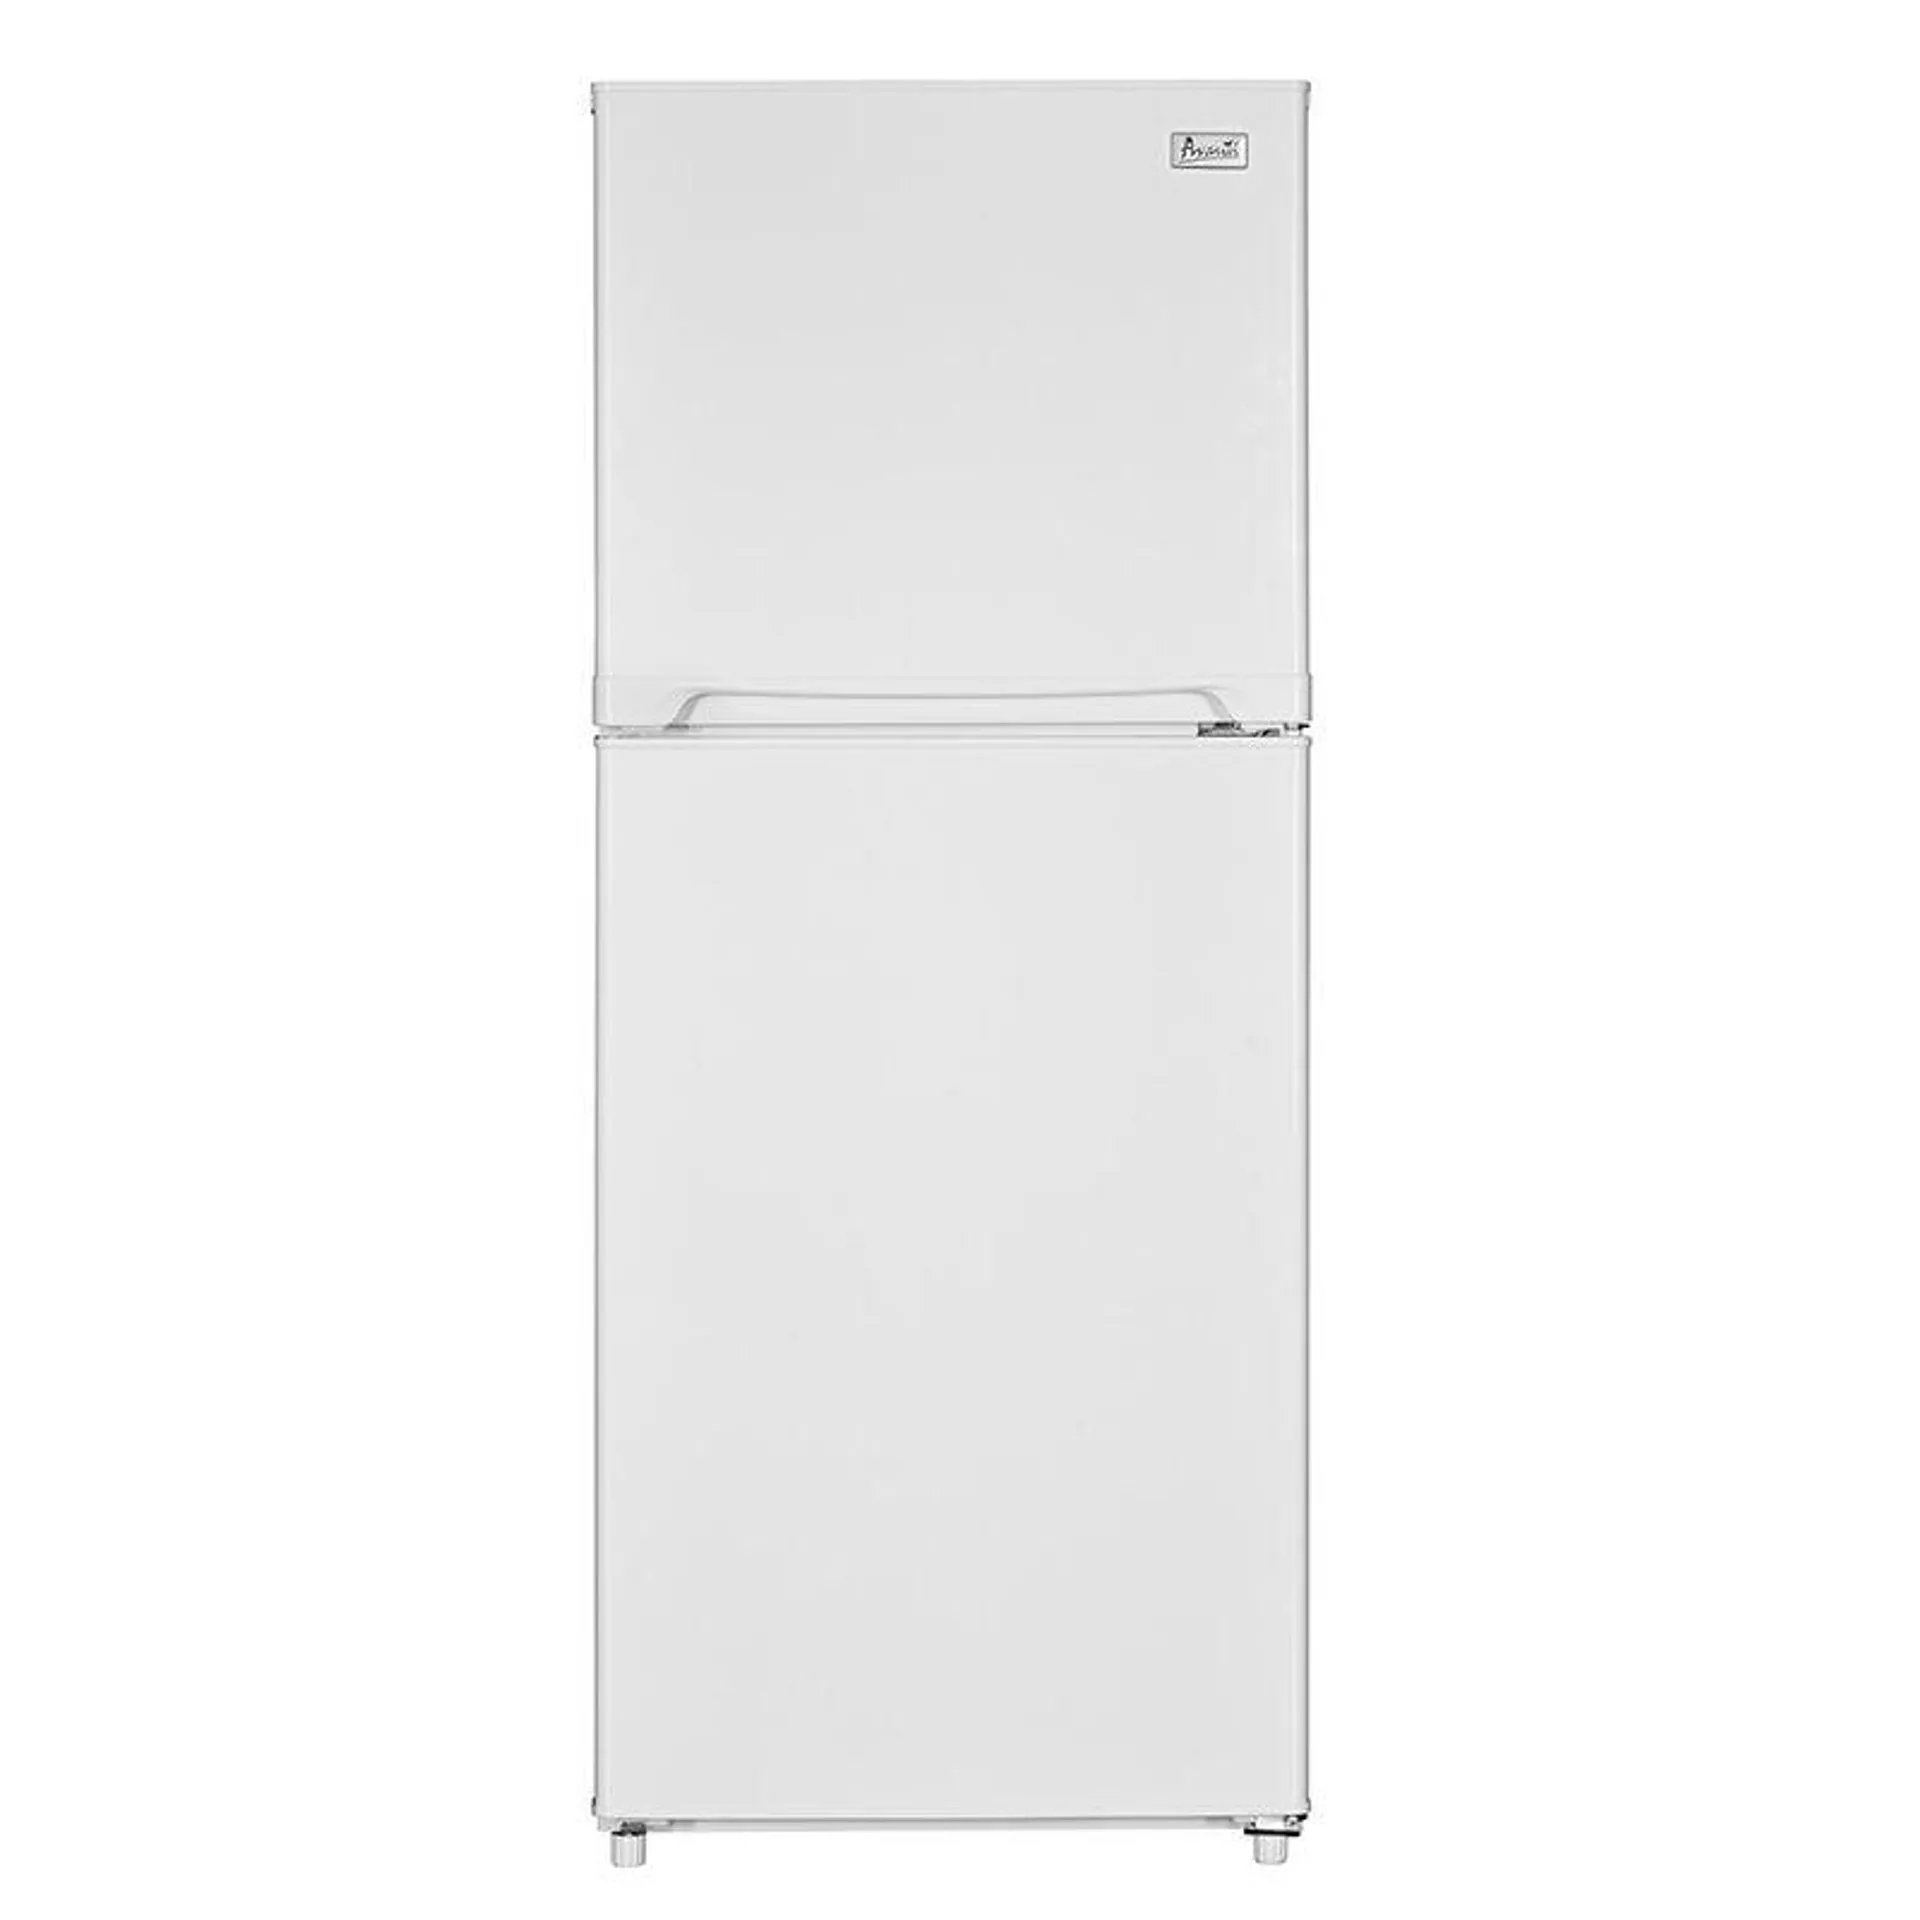 Avanti 24 in. 10.0 cu. ft. Counter Depth Top Freezer Refrigerator - White